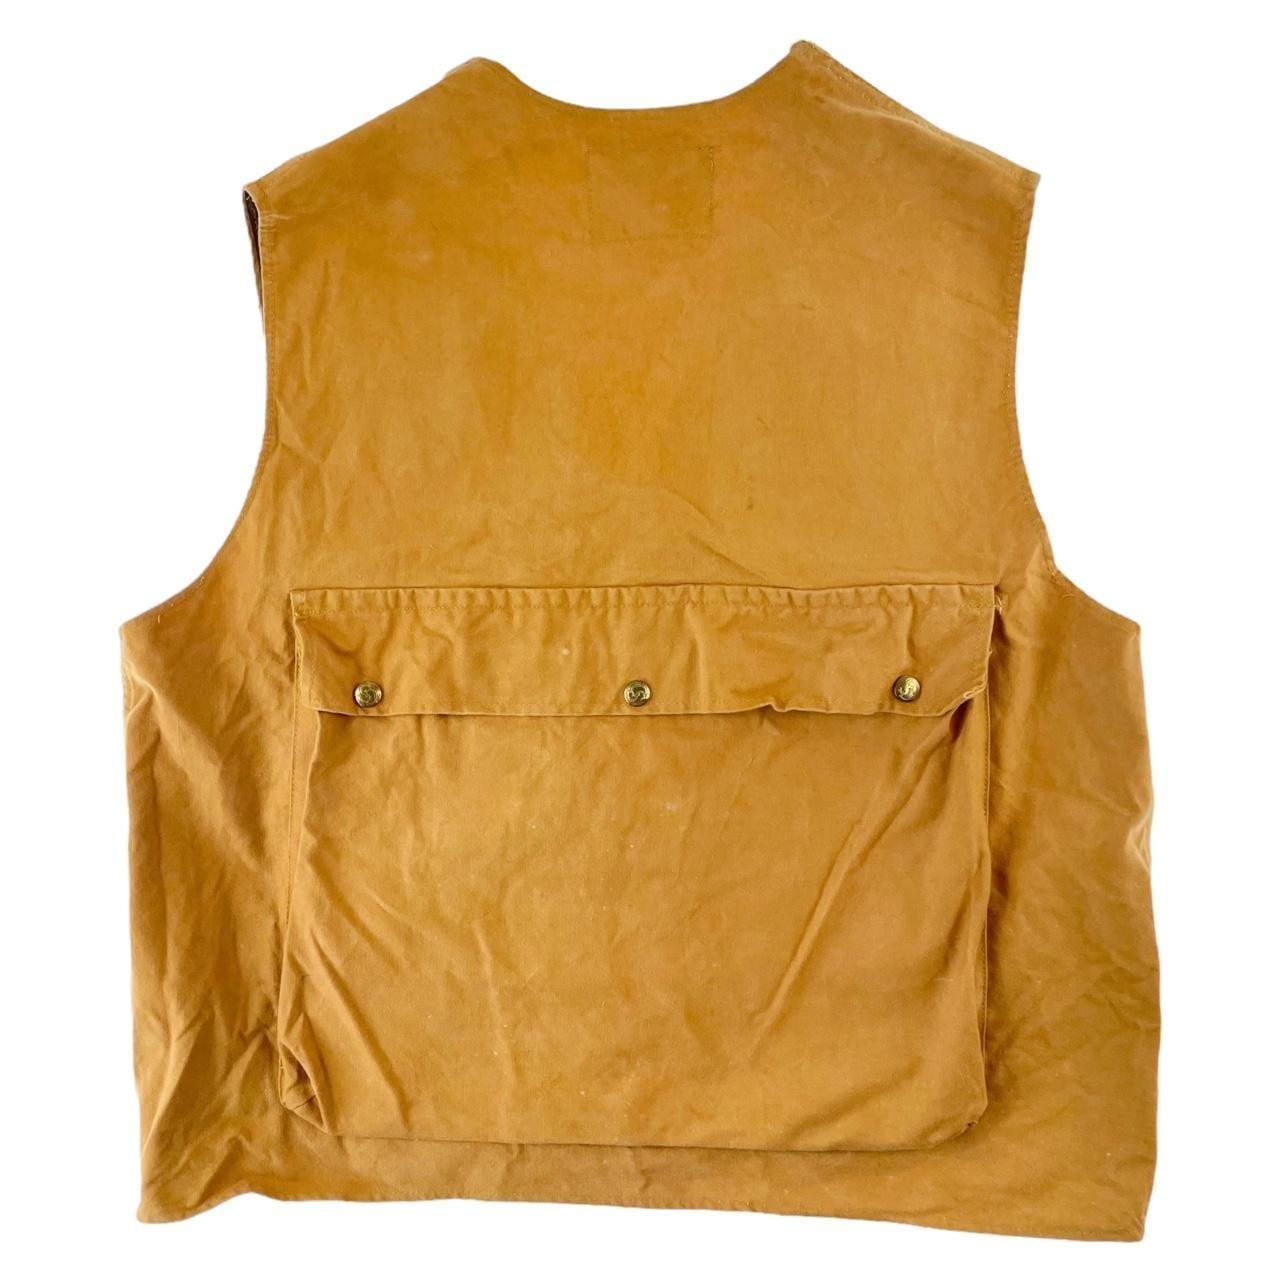 Vintage Columbia pocket vest size M - Known Source